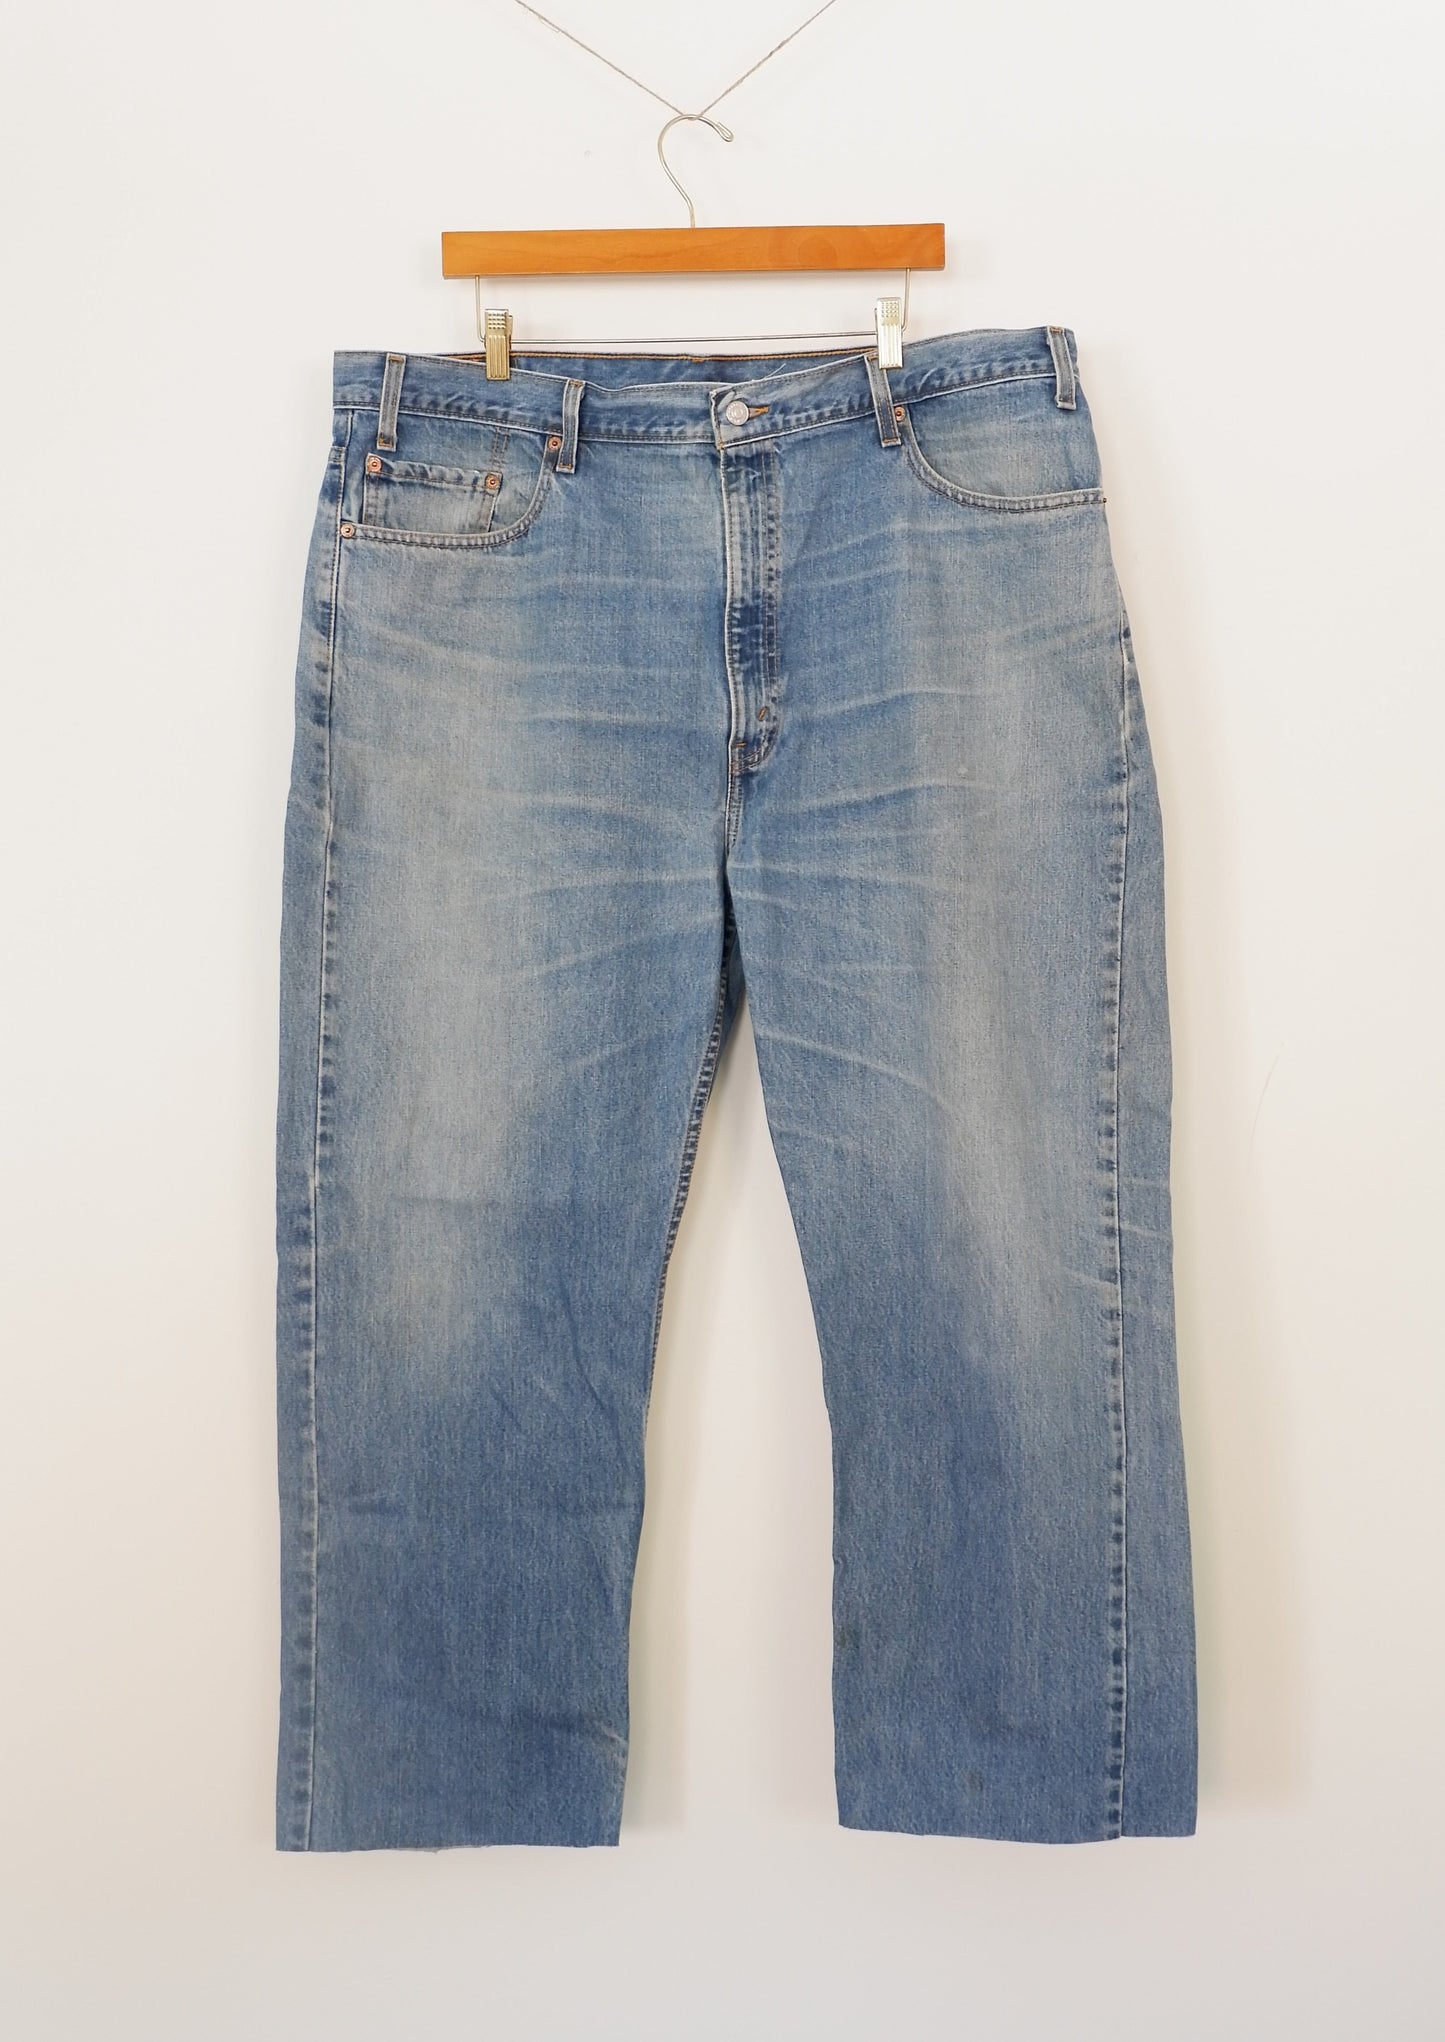 Levis 505 Medium Wash Regular Fit Jeans - 42 in